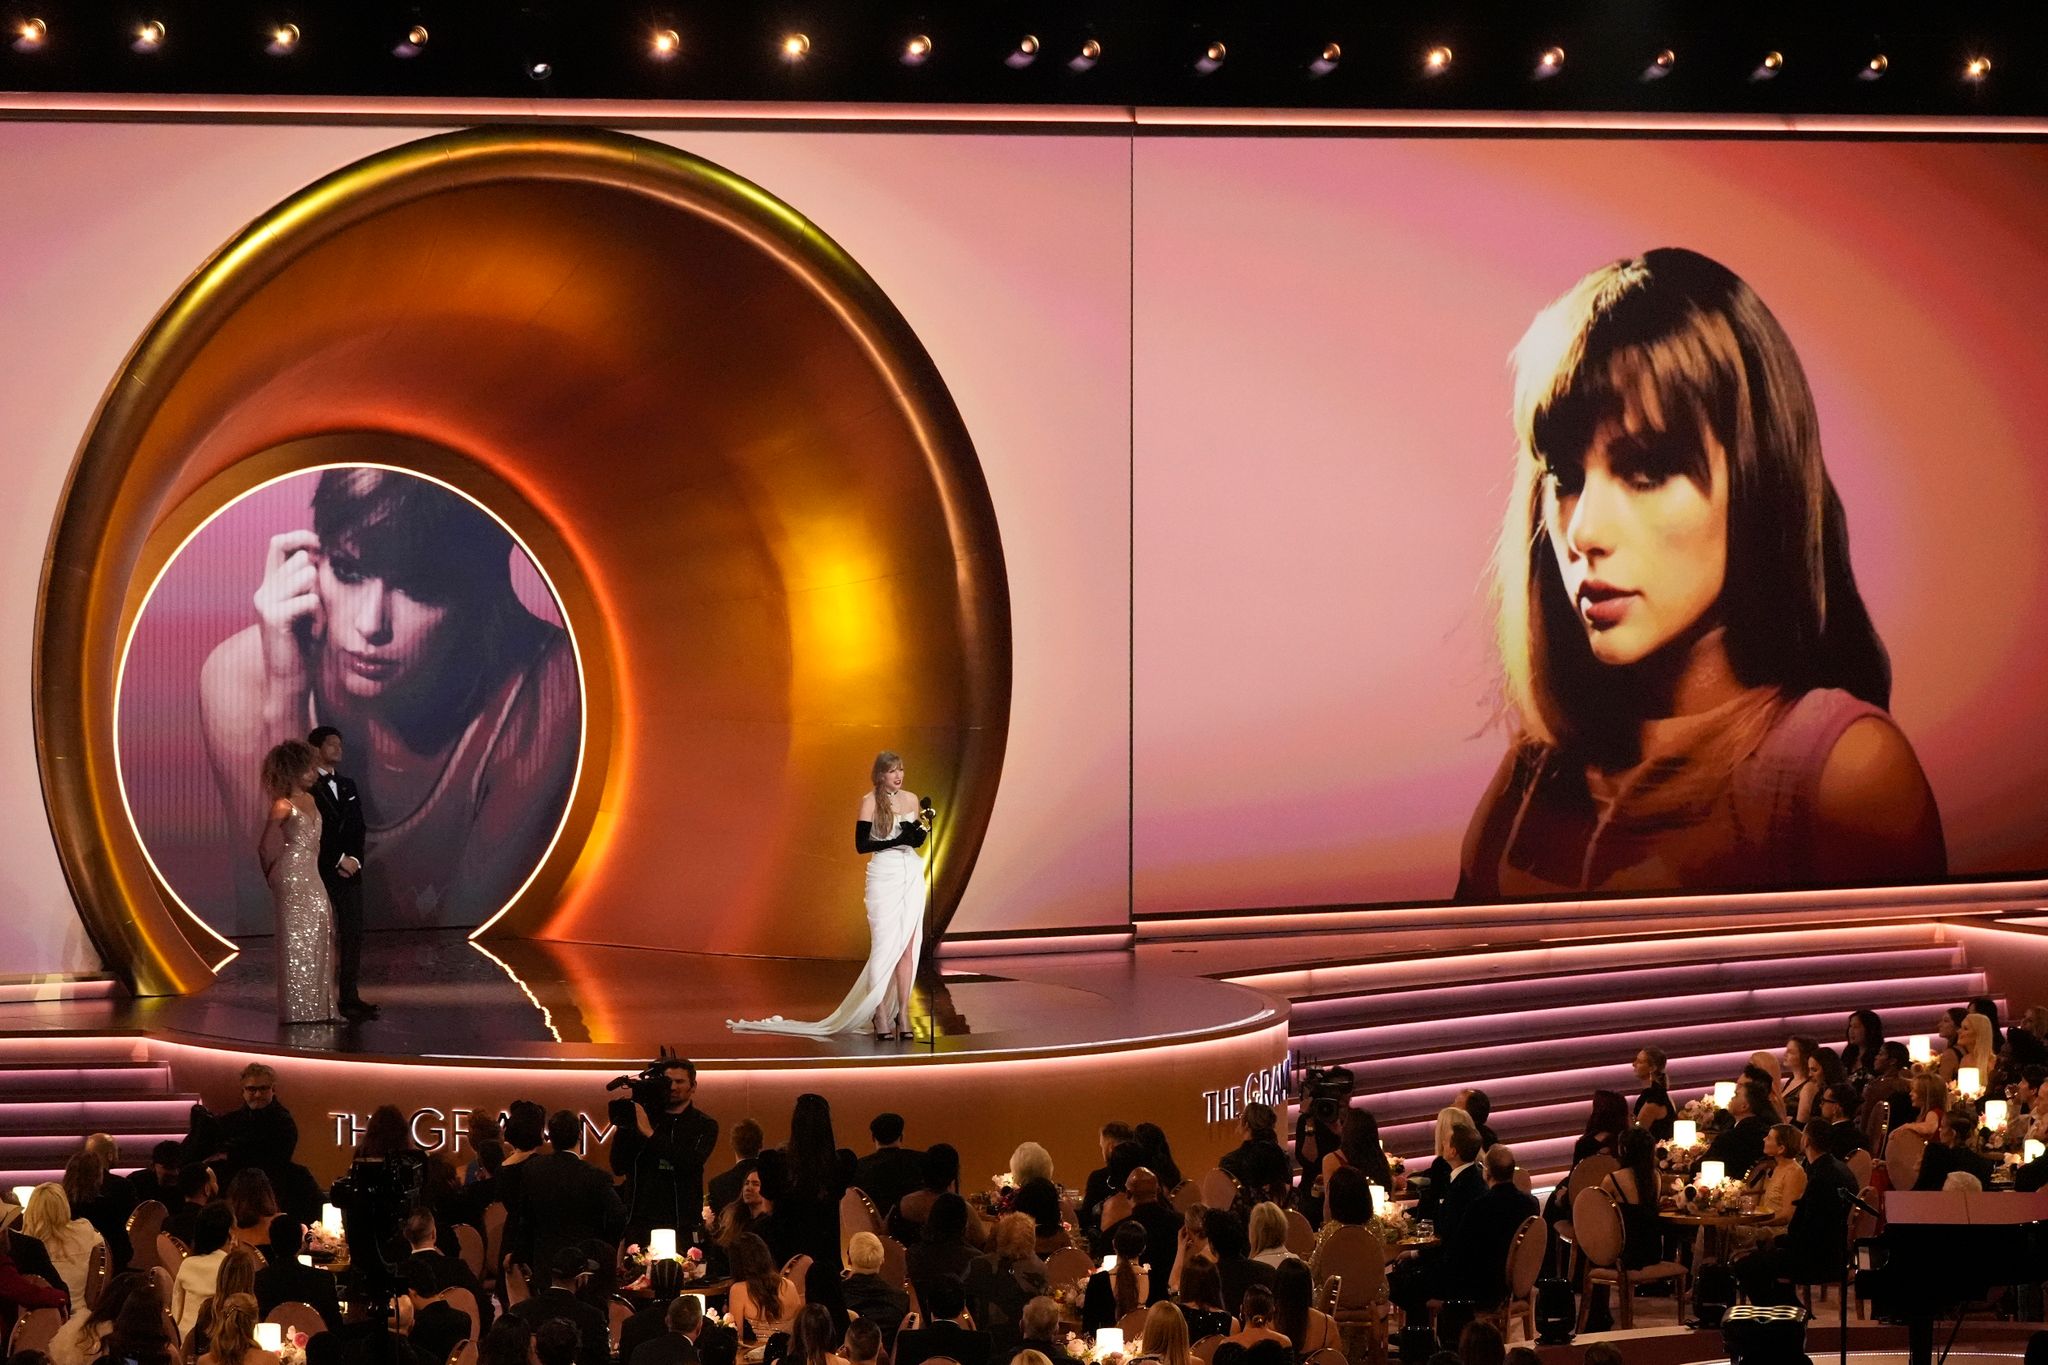 Mit dem vierten Preis für das beste Pop-Gesangsalbum lässt Taylor Swift die Musikgrößen Paul Simon, Frank Sinatra und Stevie Wonder hinter sich, die je dreimal in der Kategorie ausgezeichnet wurden.